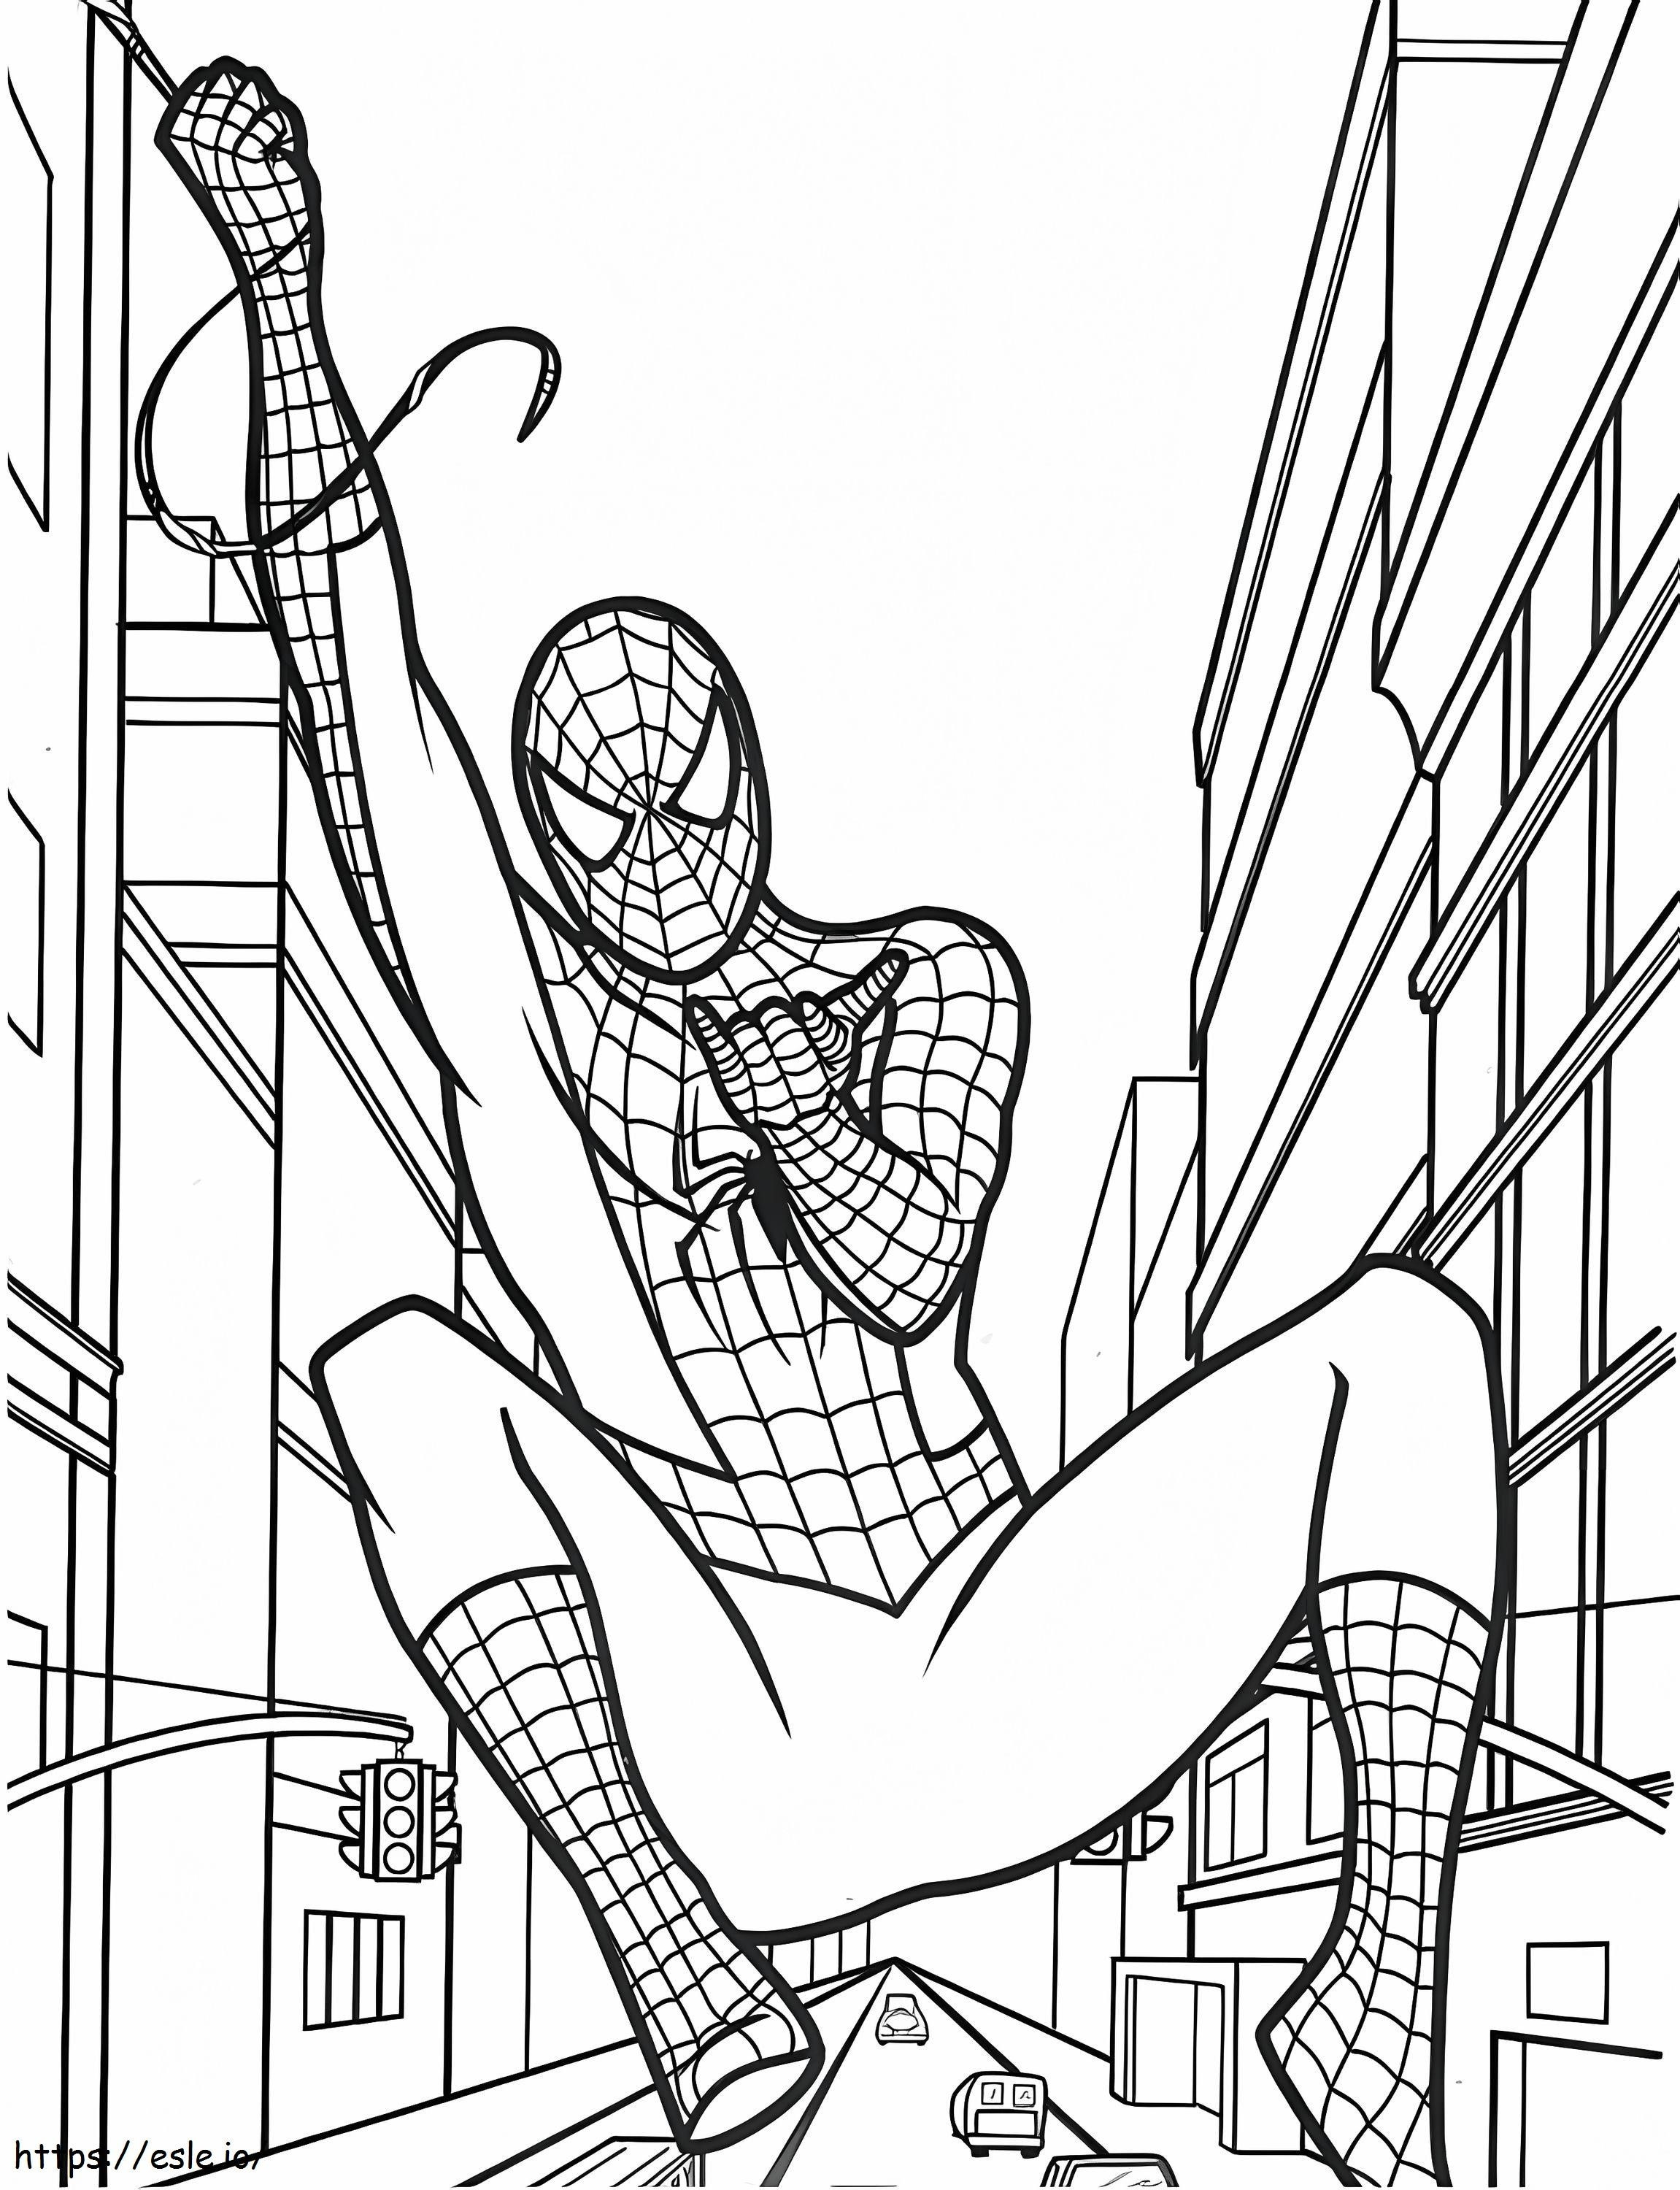  Spiderman Balanceándose A4 para colorear